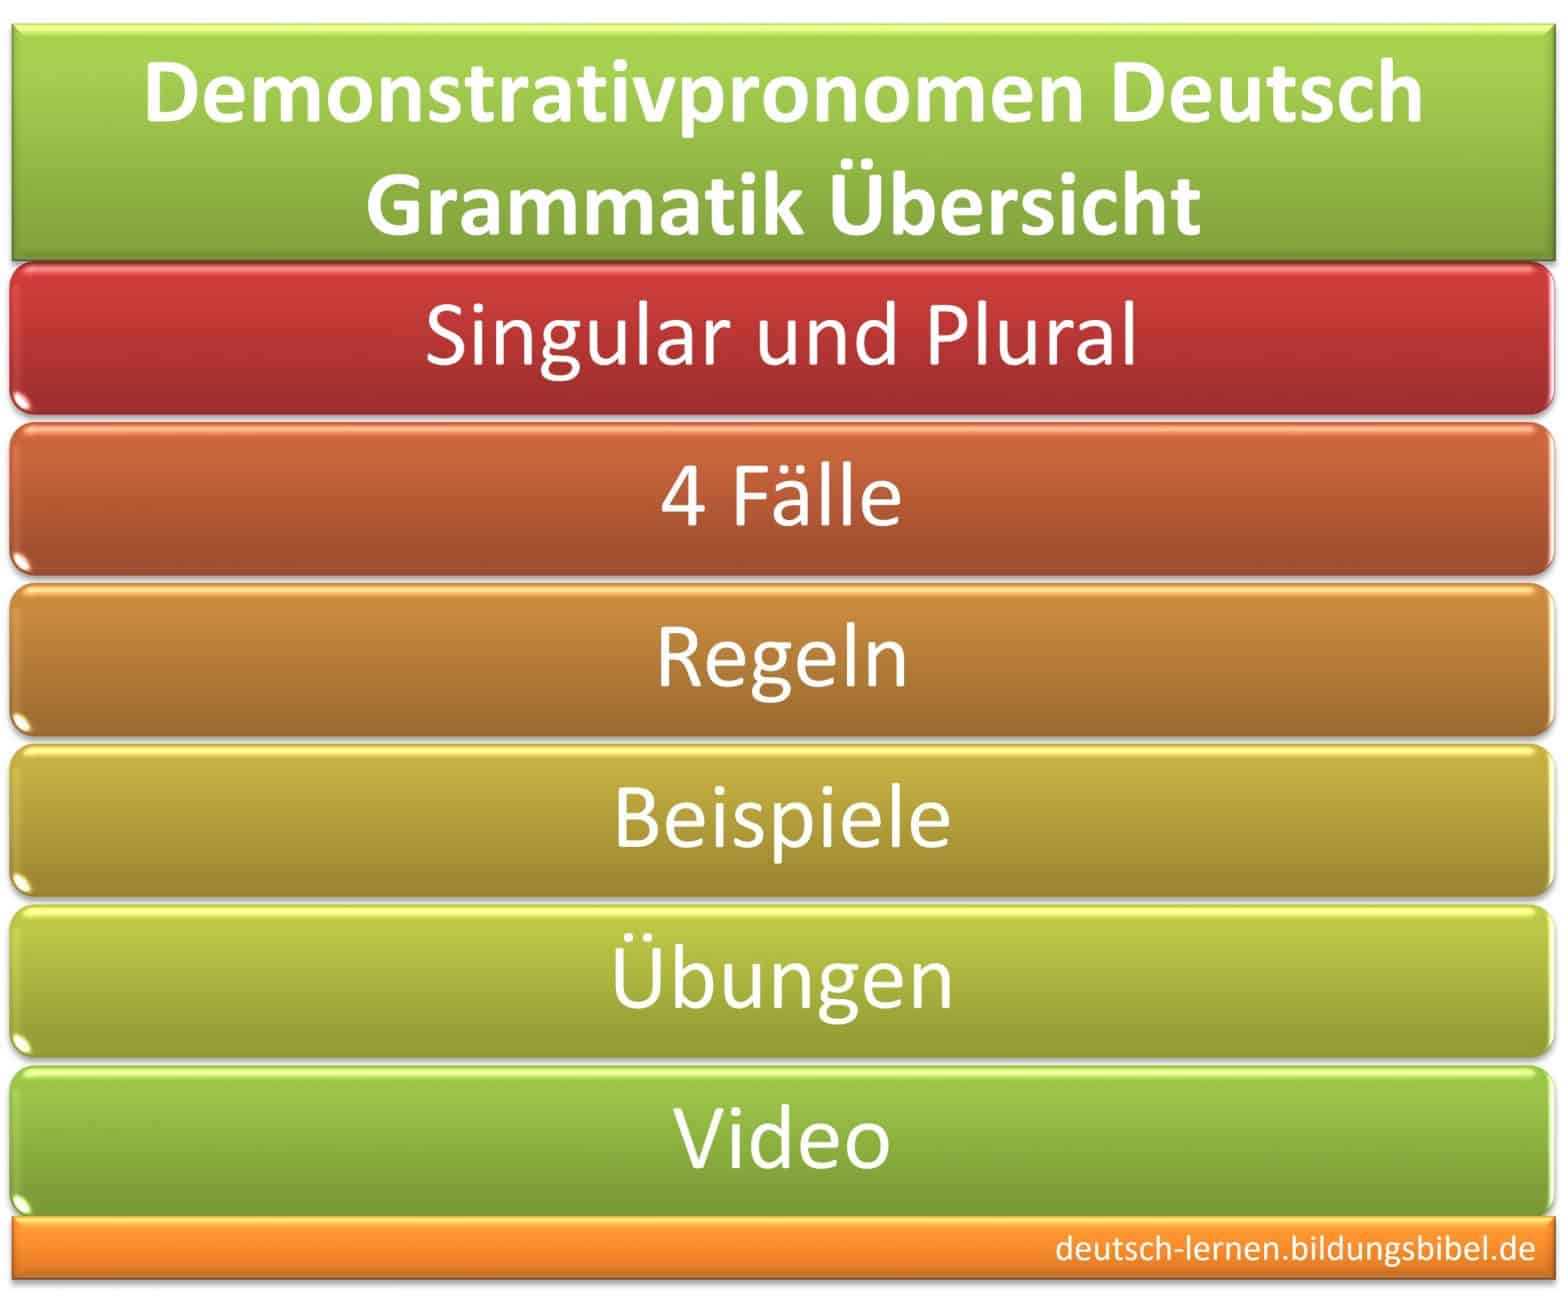 Demonstrativpronomen, hinweisende Fürwörter, Regel, Beispiel, vier Fälle, Video, Arbeitsblätter, Übungen, Deutsch Grammatik lernen.